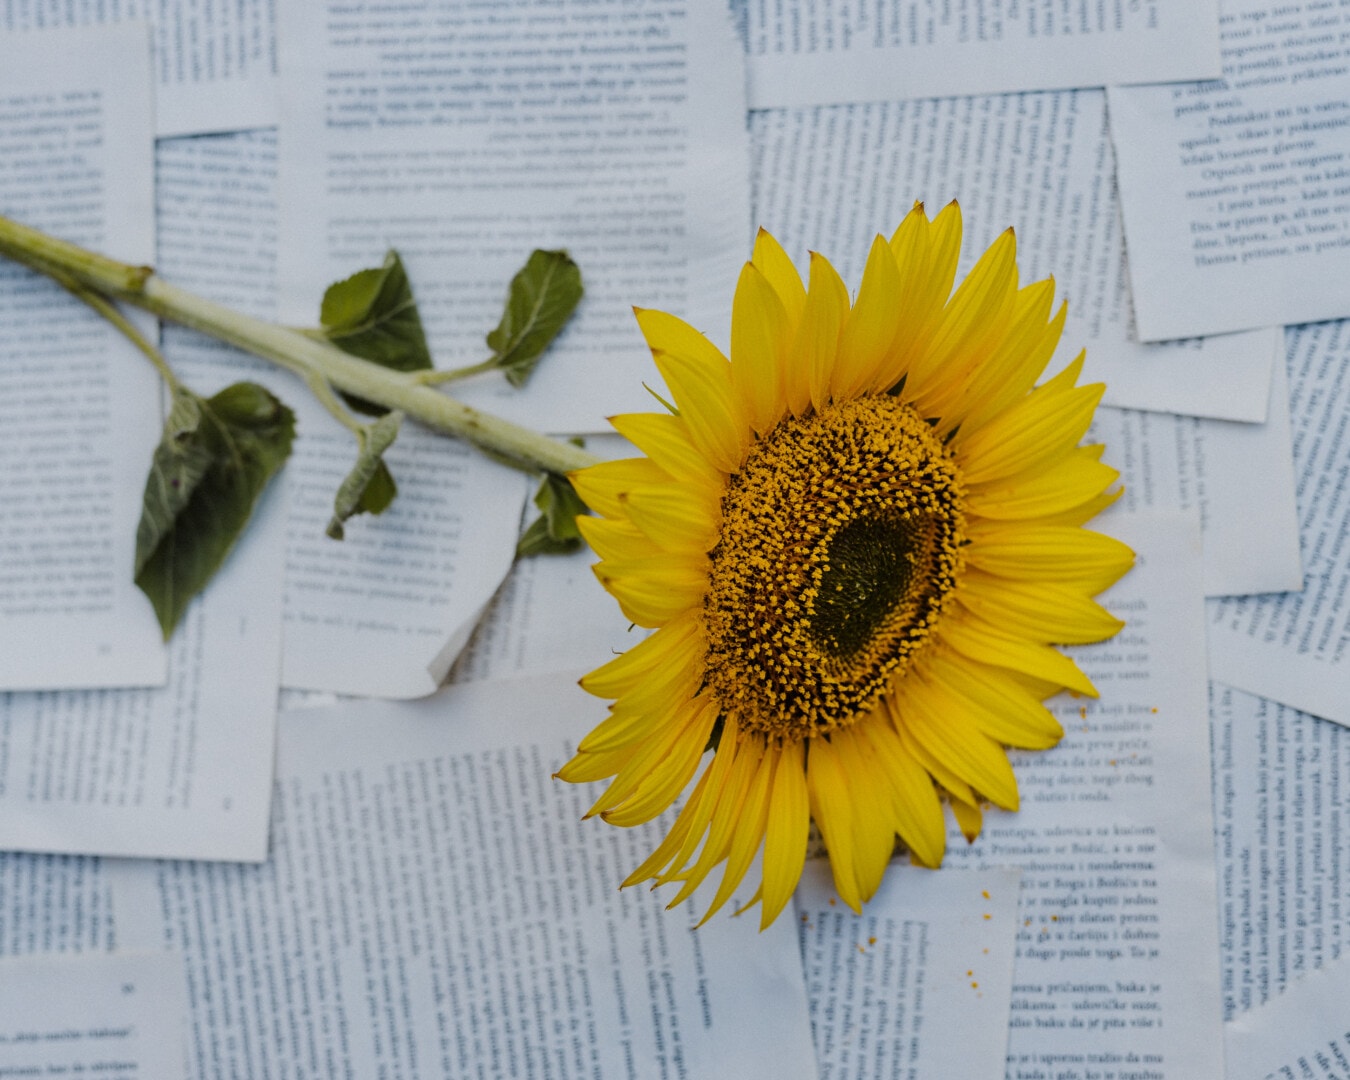 suncokret, papir, fotografije, novine, fotografski studio, biljka, žuta, cvijet, tekst, svijetlo